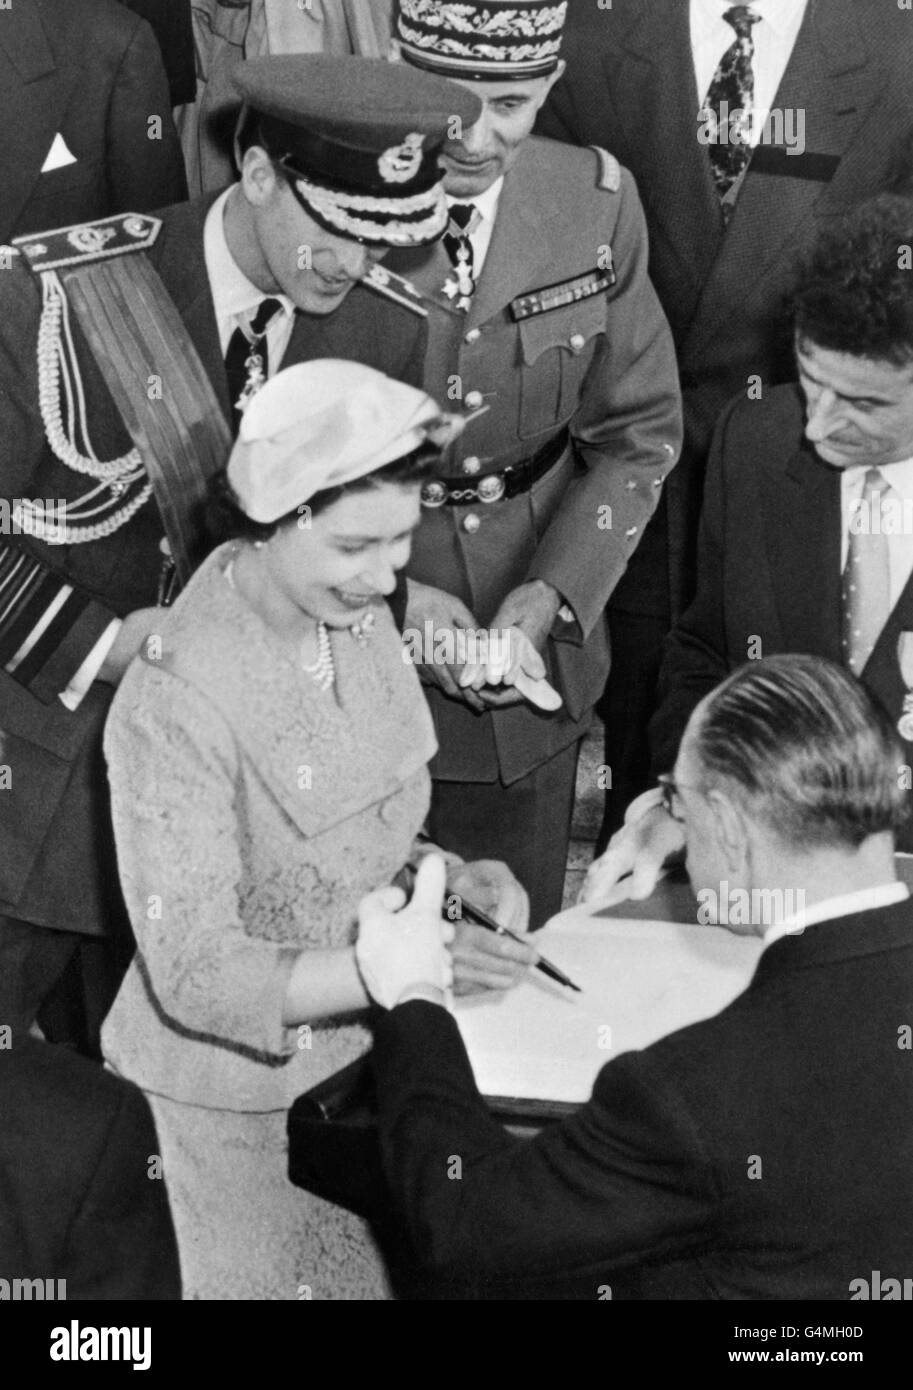 La reine Elizabeth II signe le livre d'or, conservé pour les visiteurs distingués, après avoir déposé une couronne à la tombe du Soldat inconnu à l'Arc de Triomphe, Paris. Le duc d'Édimbourg attend son tour pour signer. Banque D'Images